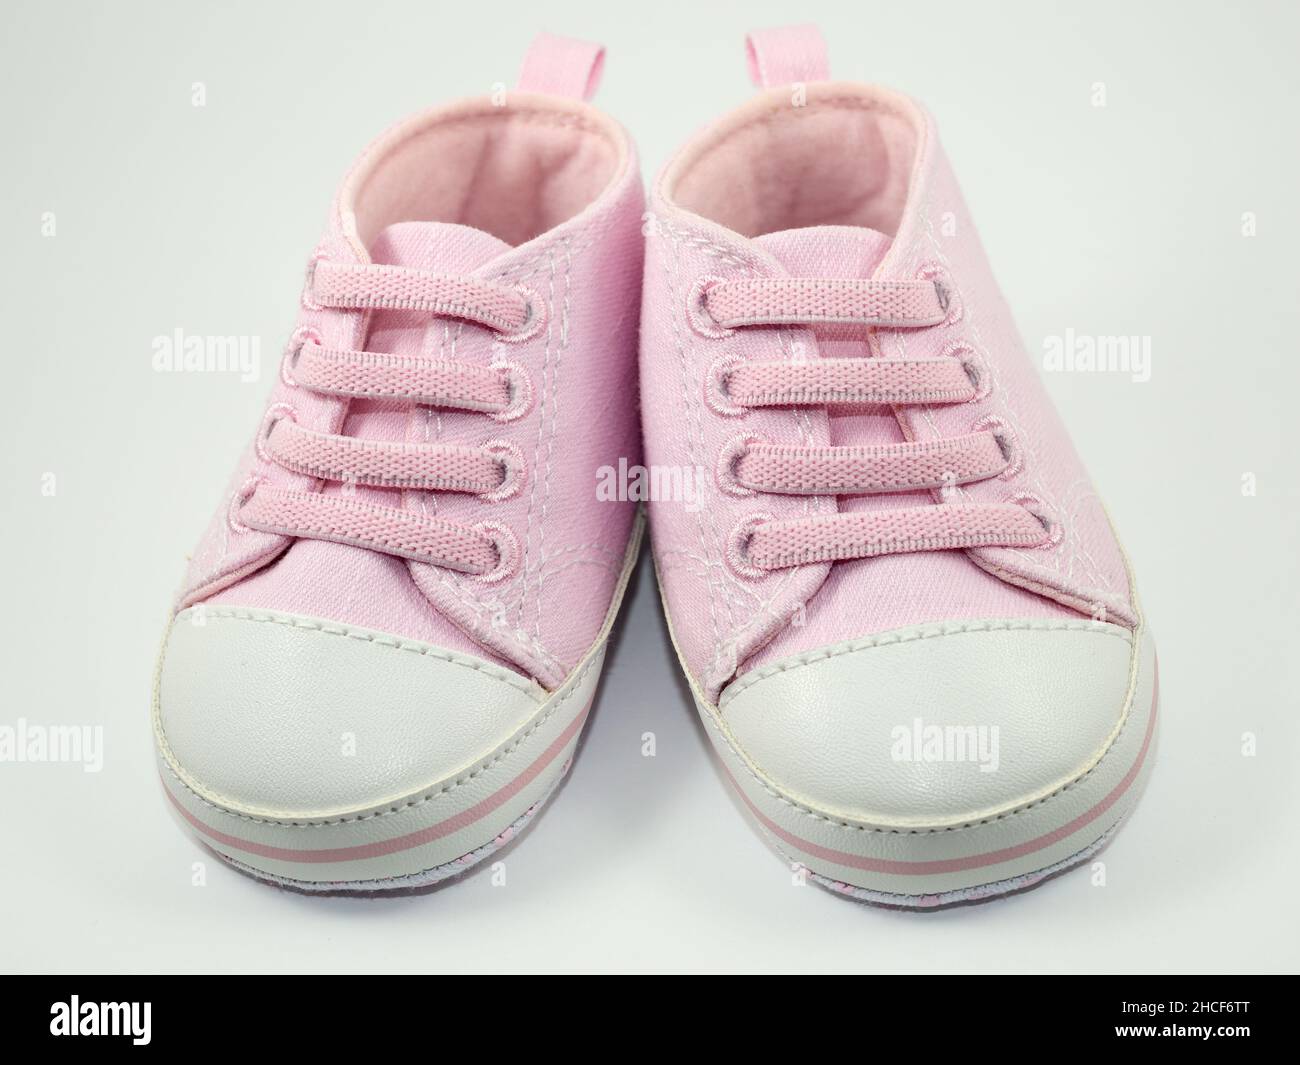 Ein Paar rosa Sneakers von kleiner Größe auf weißem Hintergrund Stockfoto